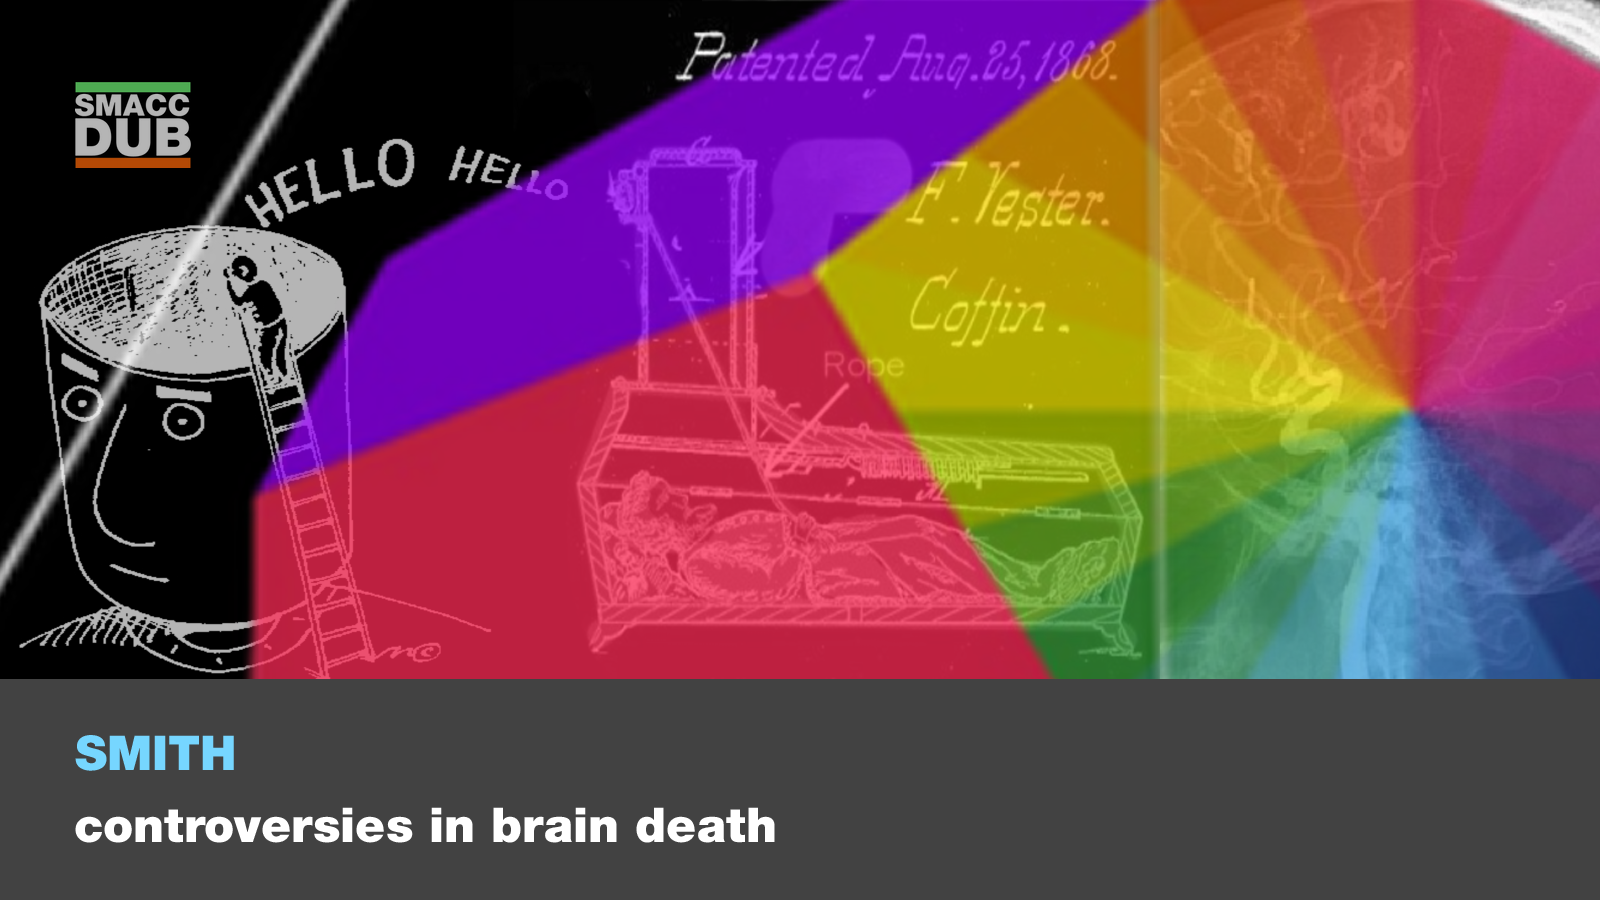 The Controversies in Brain Death: Martin Smith